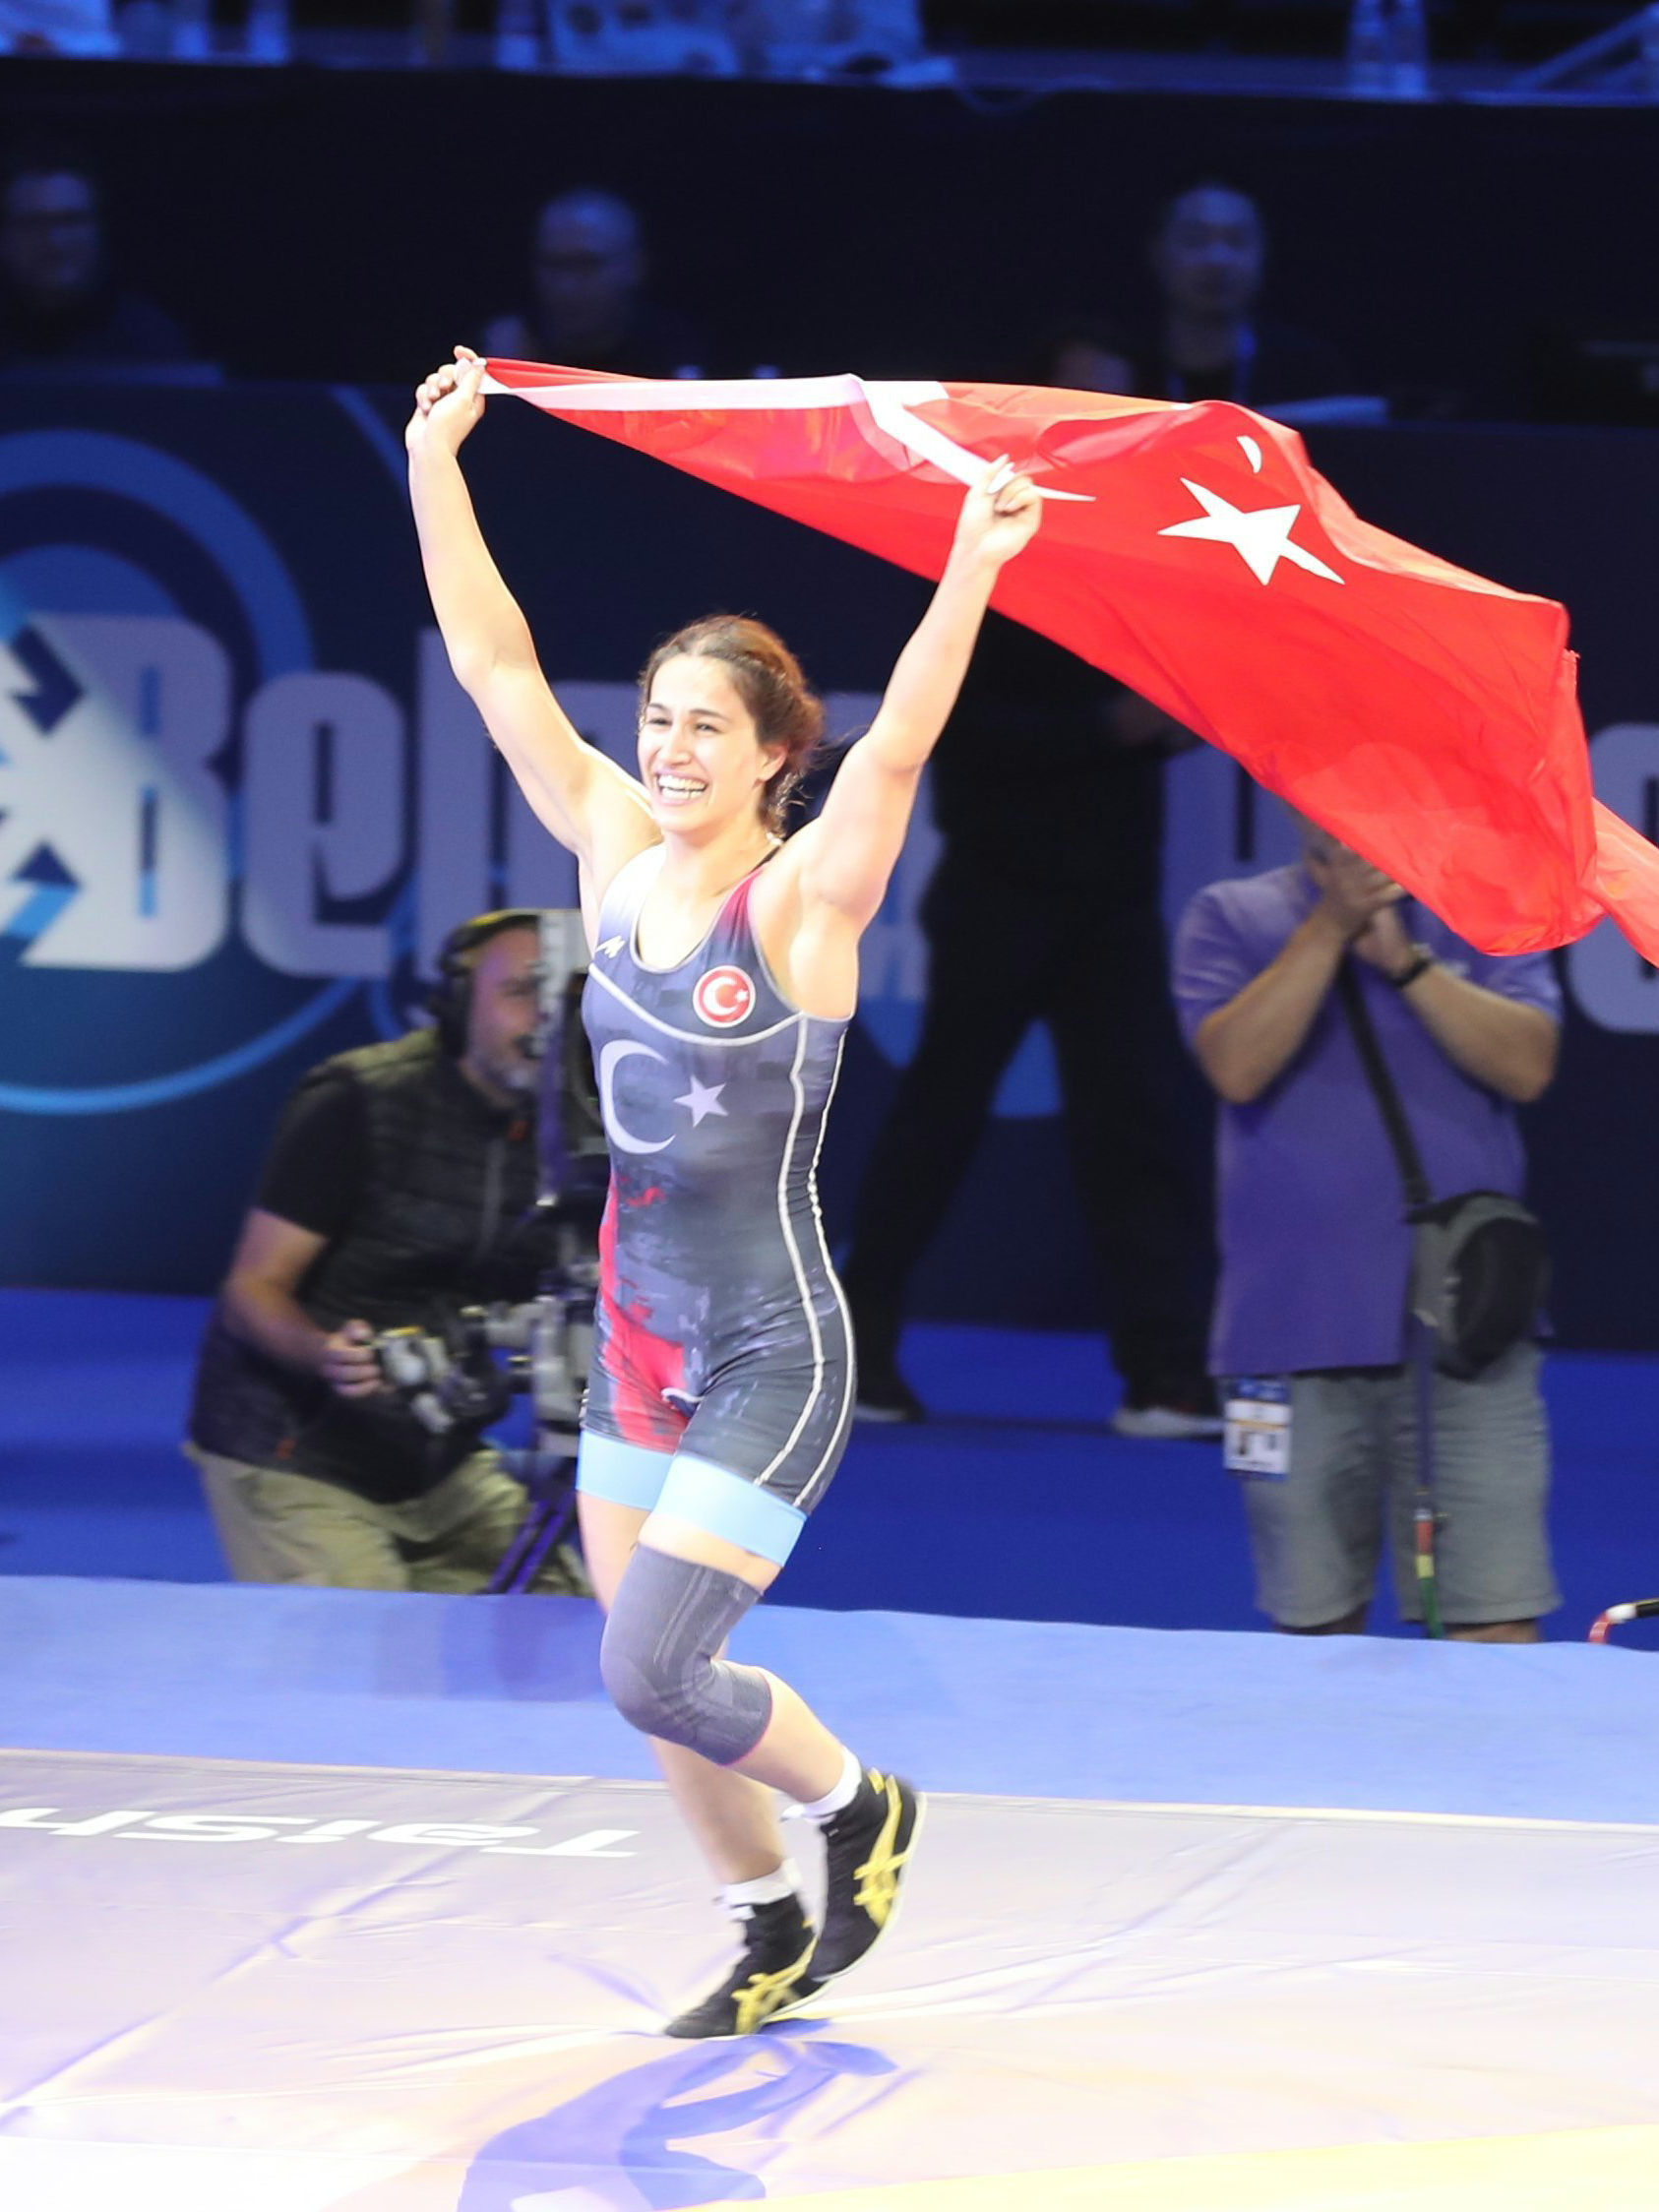 Buse Tosun Çavuşoğlu, Avrupa Güreş Şampiyonası'nda muhteşem bir performans sergileyerek Ukraynalı rakibi Tetiana Sova Rizhko'yu 5-2 yenerek altın madalyanın sahibi oldu! Türk güreşinin gururu Buse'yi yürekten tebrik ediyoruz! 🥇👏

# # # #